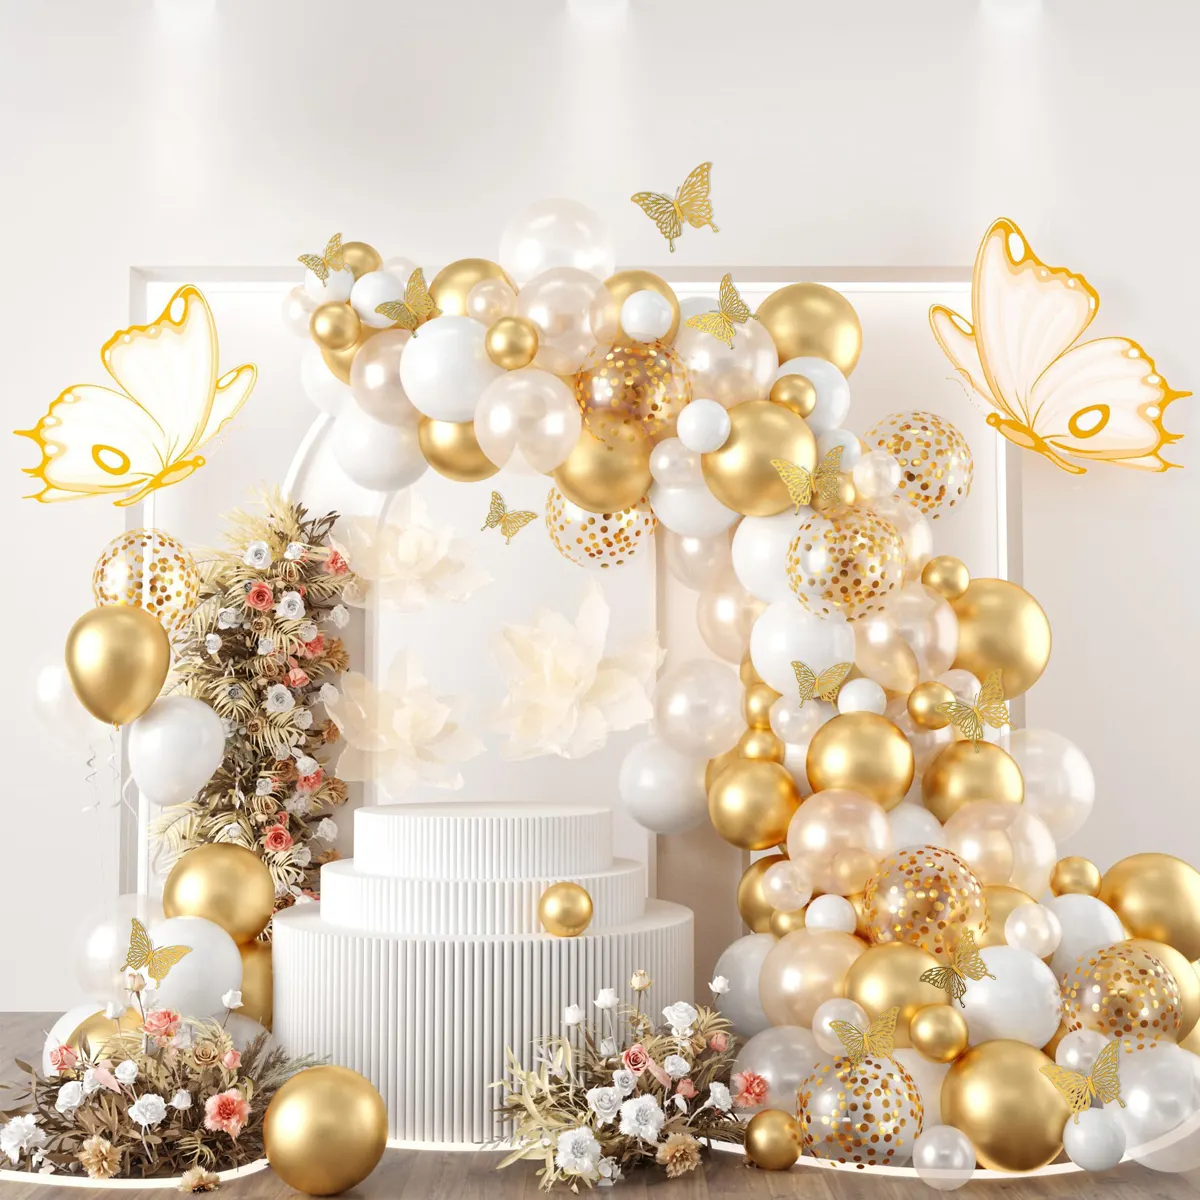 New design Borboleta ouro branco Confetti balões Arch guirlanda kits para o aniversário do casamento decorações do partido fornece decoração home